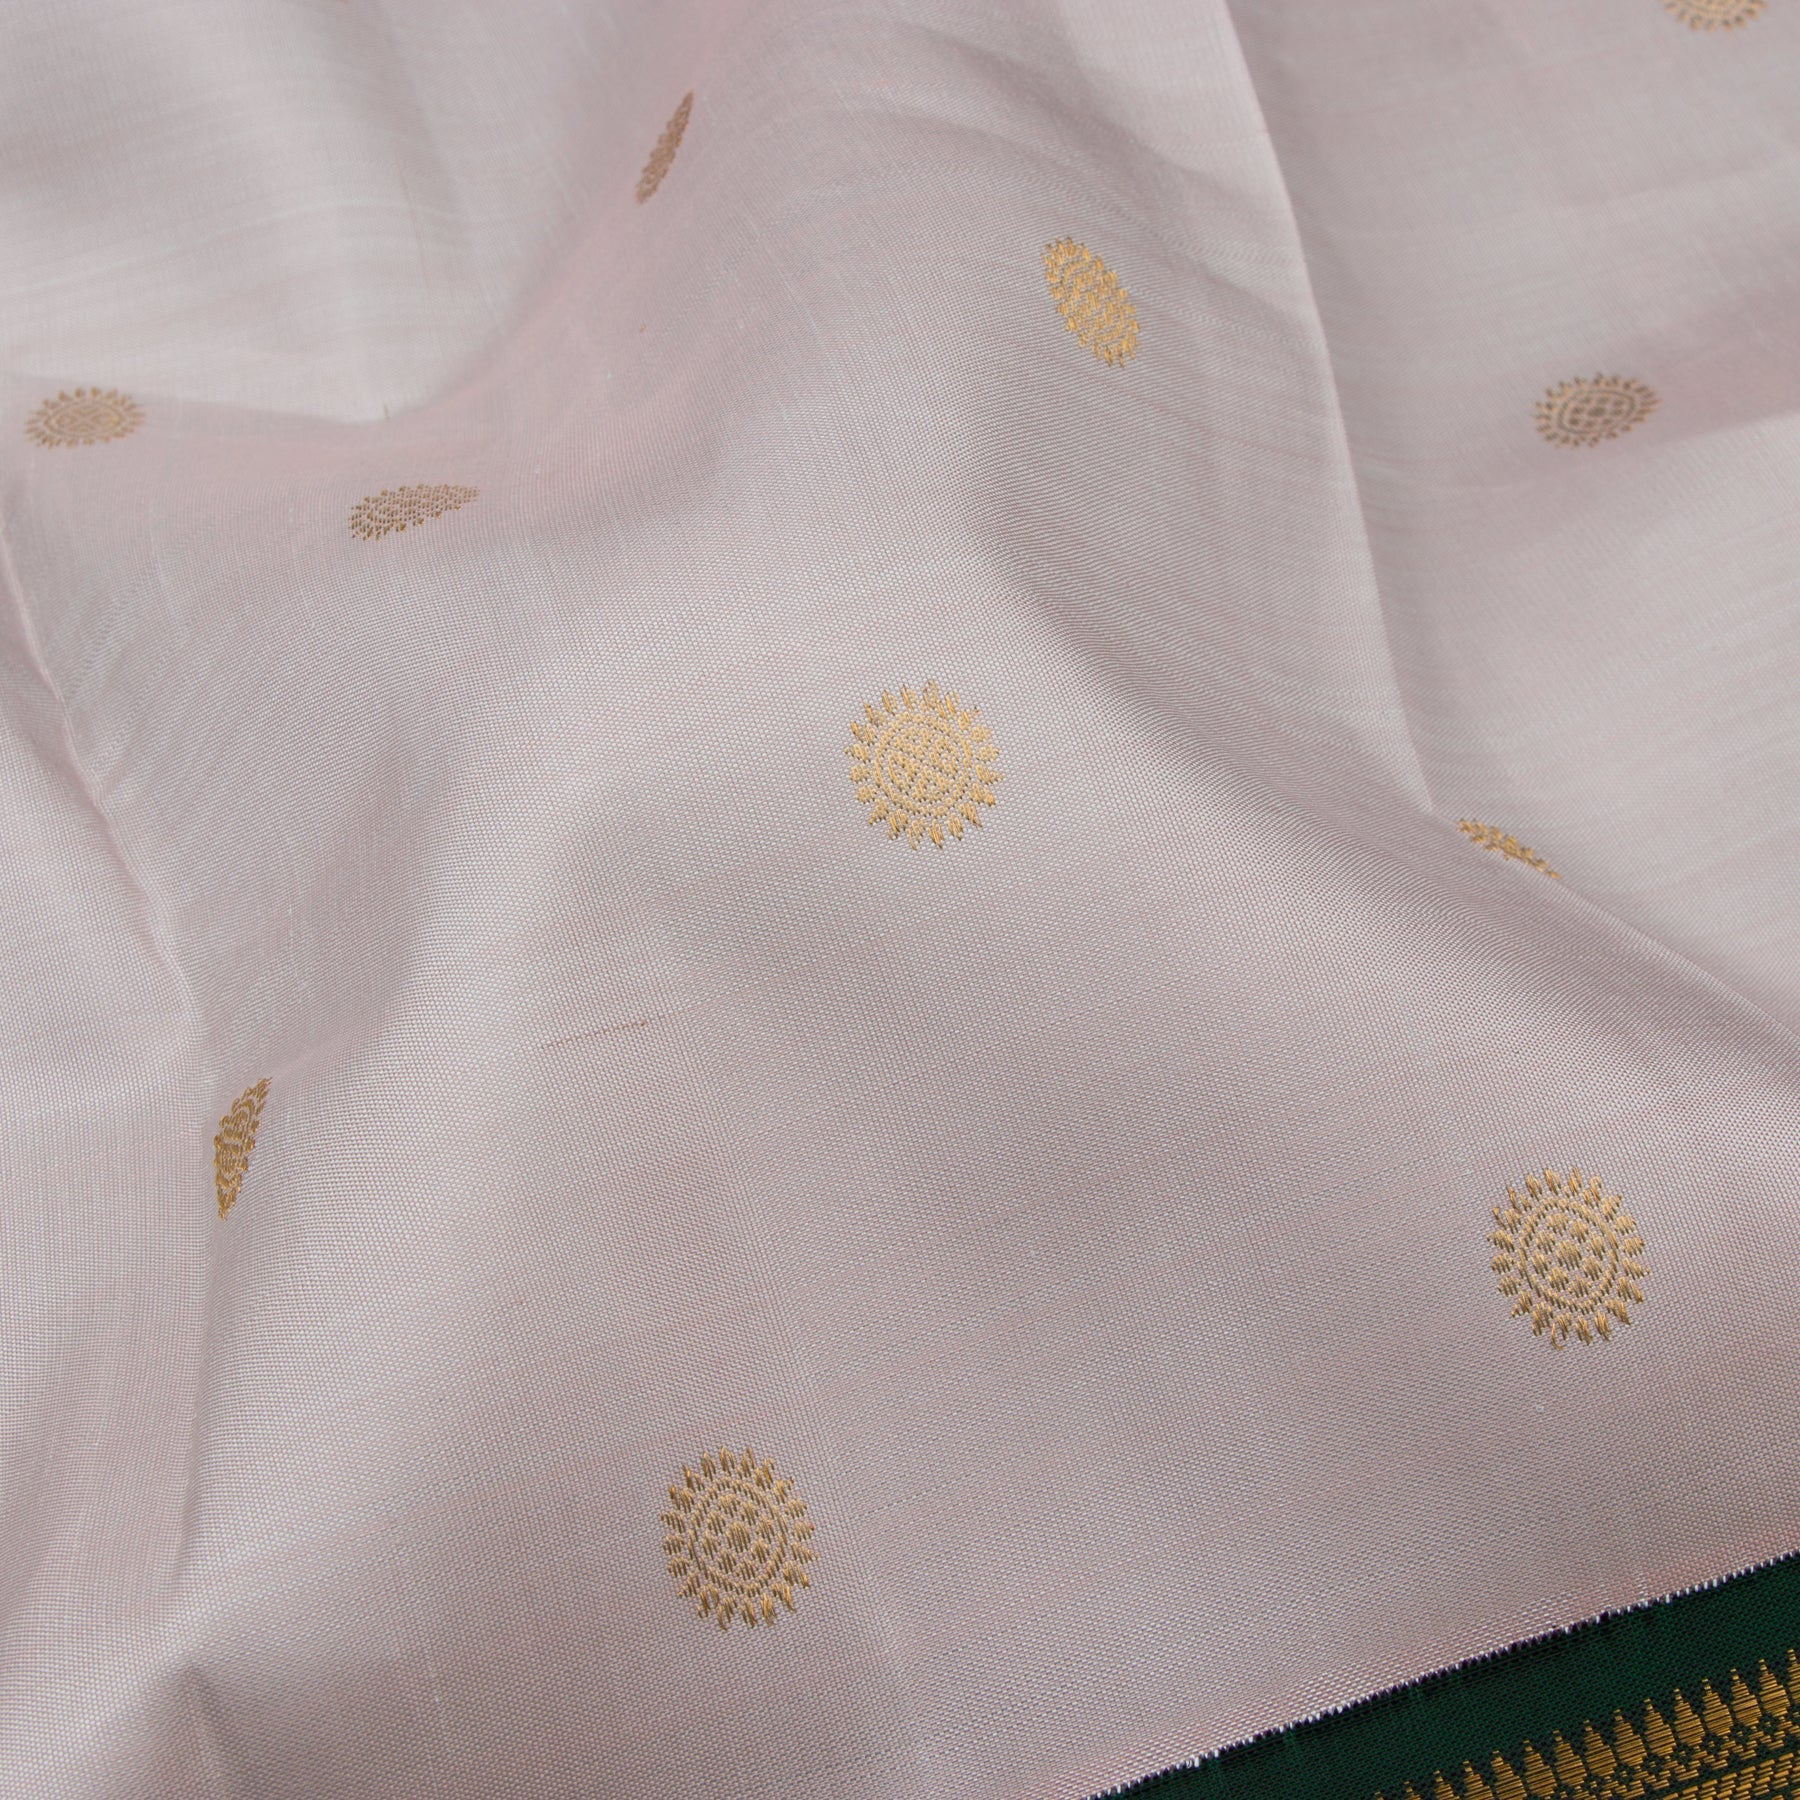 Kanakavalli Kanjivaram Silk Sari 22-110-HS001-08579 - Fabric View